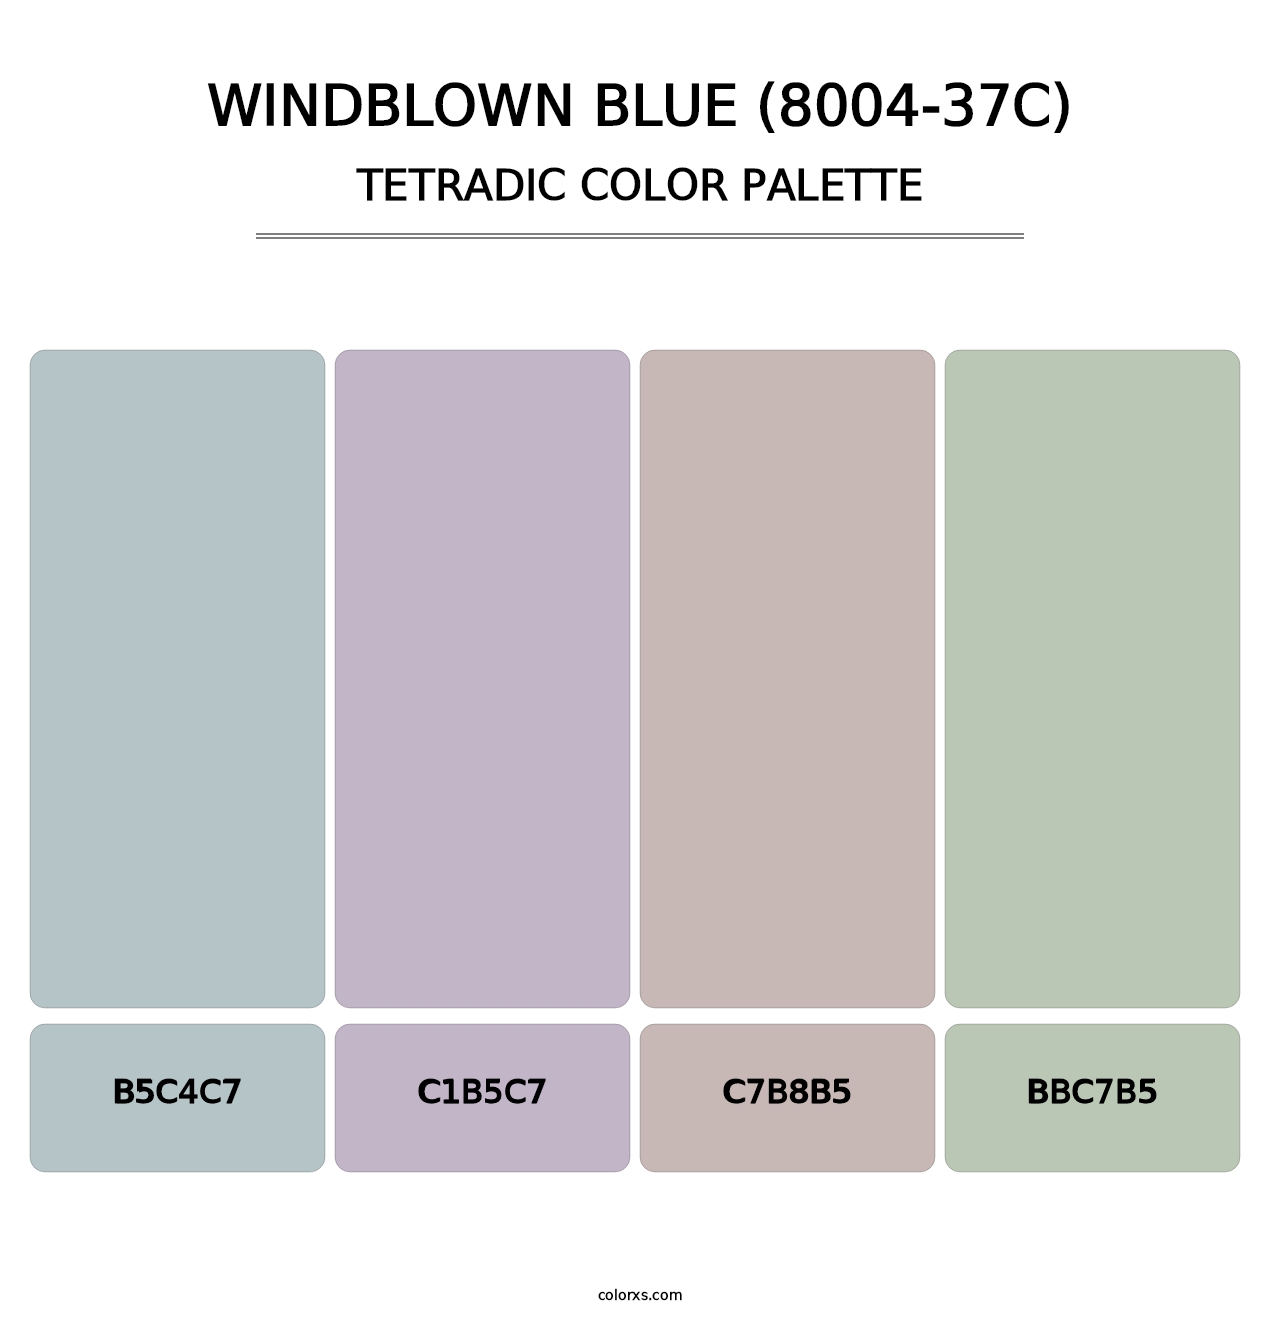 Windblown Blue (8004-37C) - Tetradic Color Palette